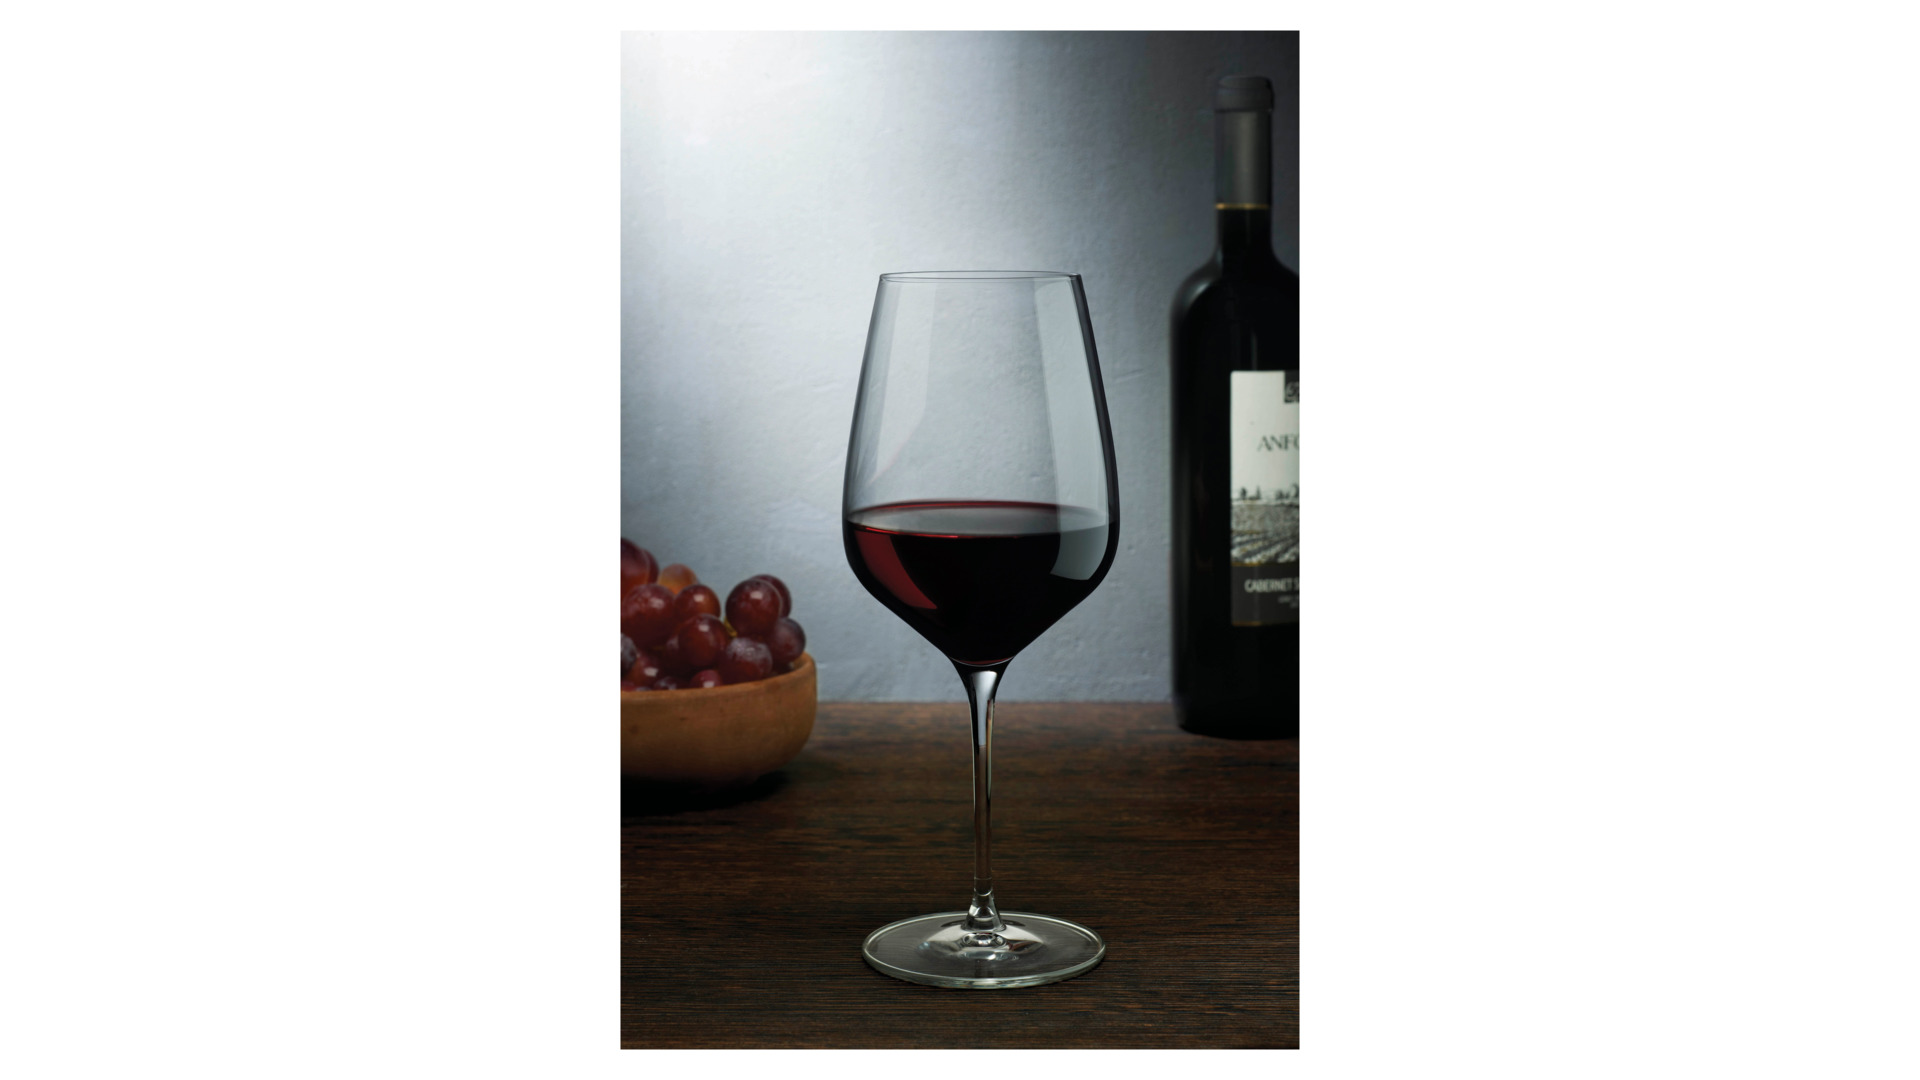 Набор бокалов для красного вина Nude Glass Совершенство 610 мл, 2 шт, стекло хрустальное